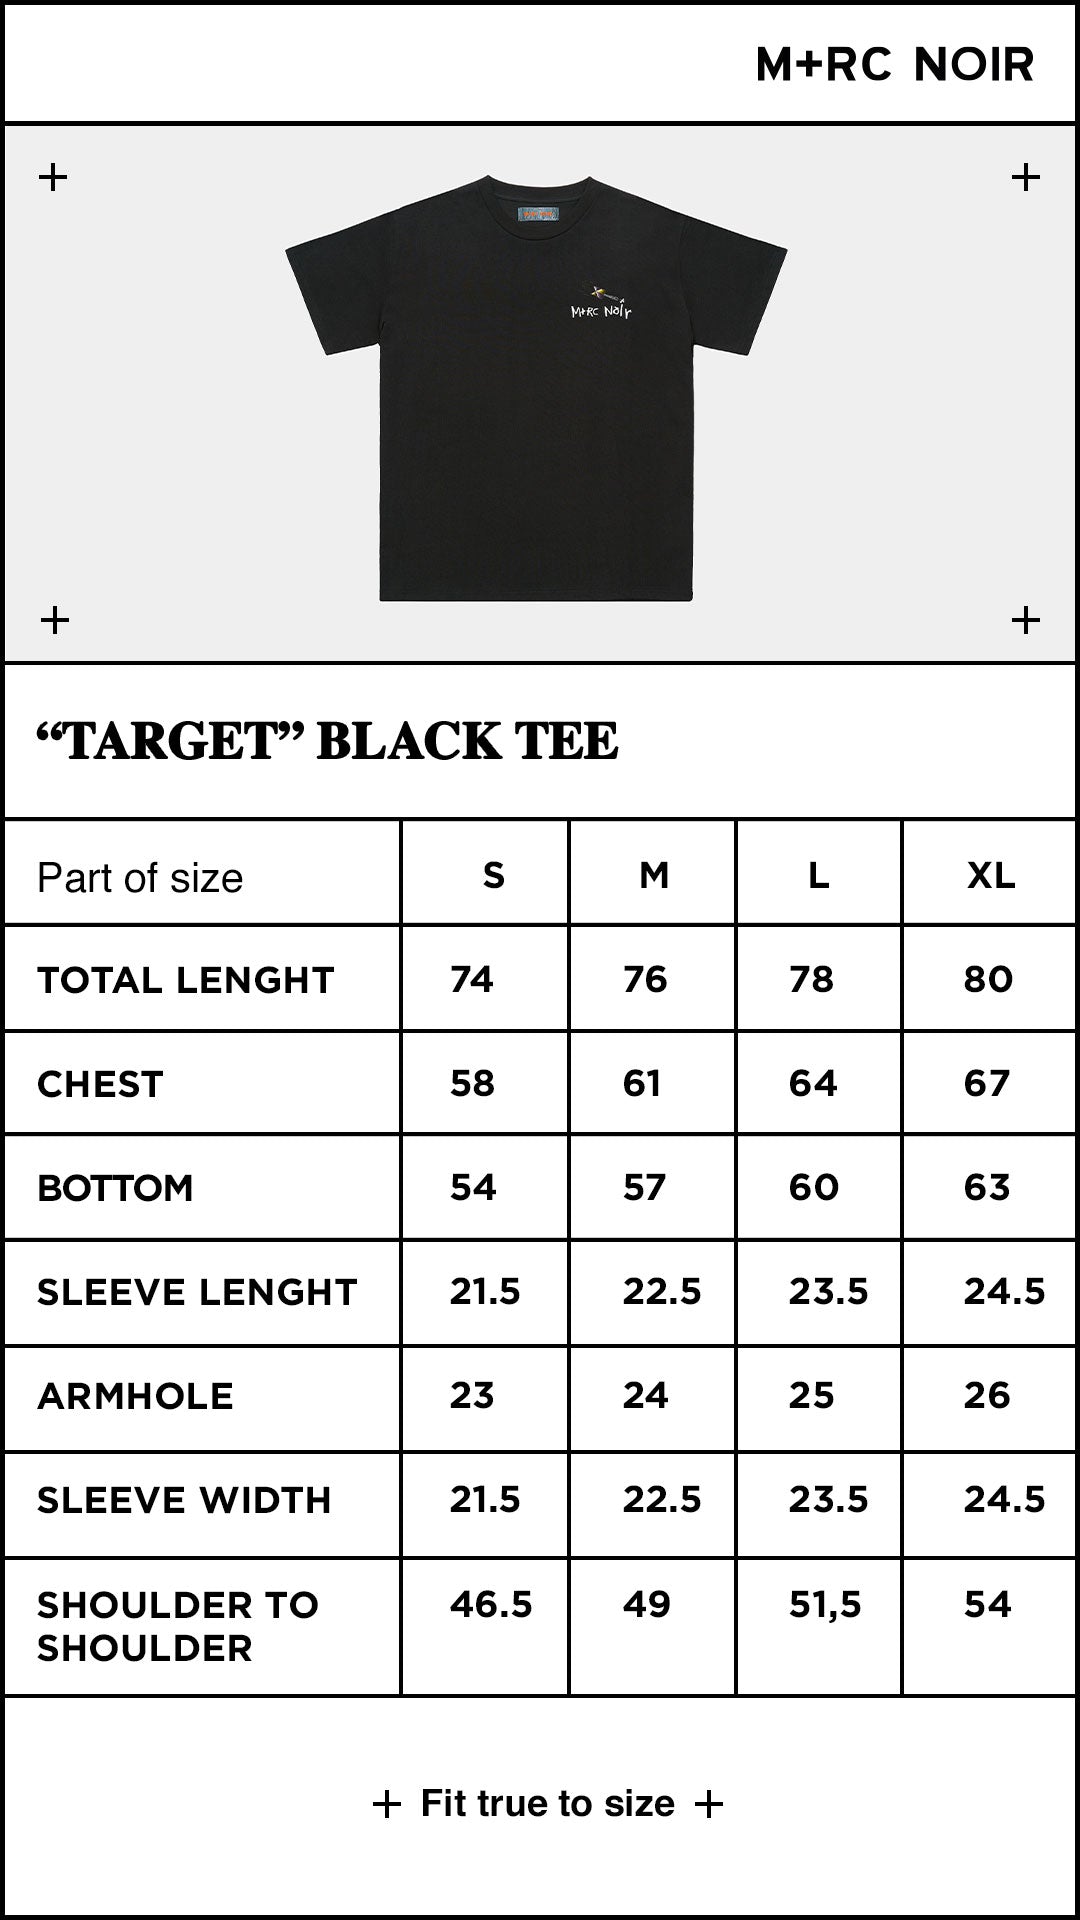 “Target” 300gms black tee